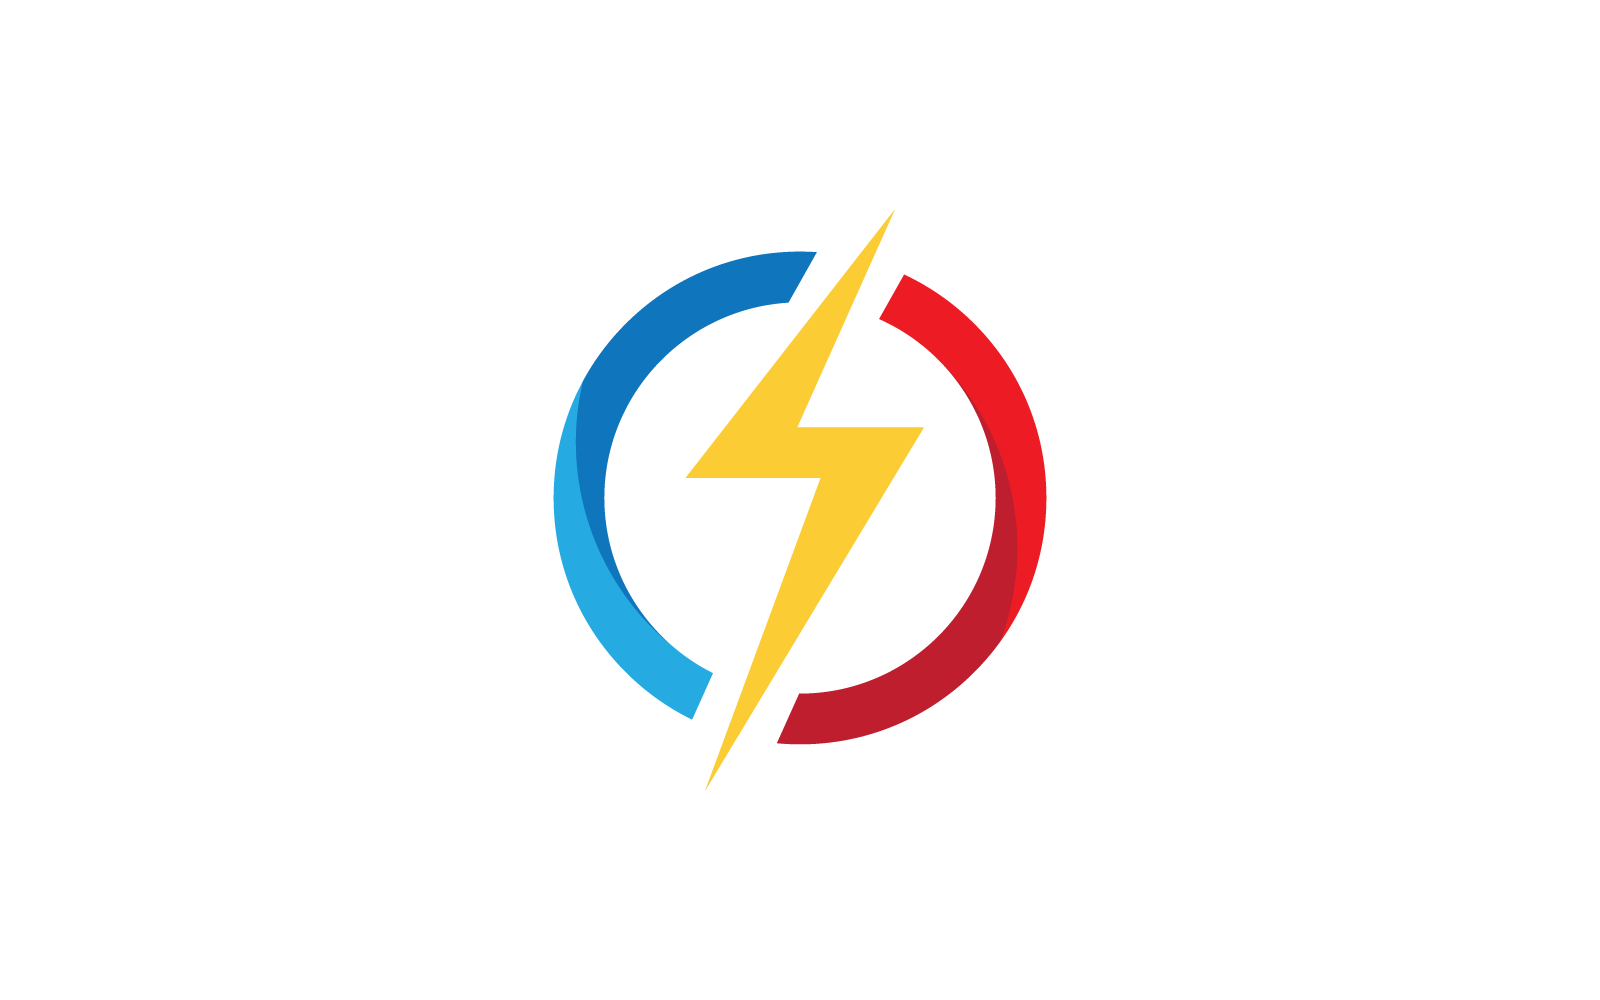 Power lightning logo illustration vector flat design